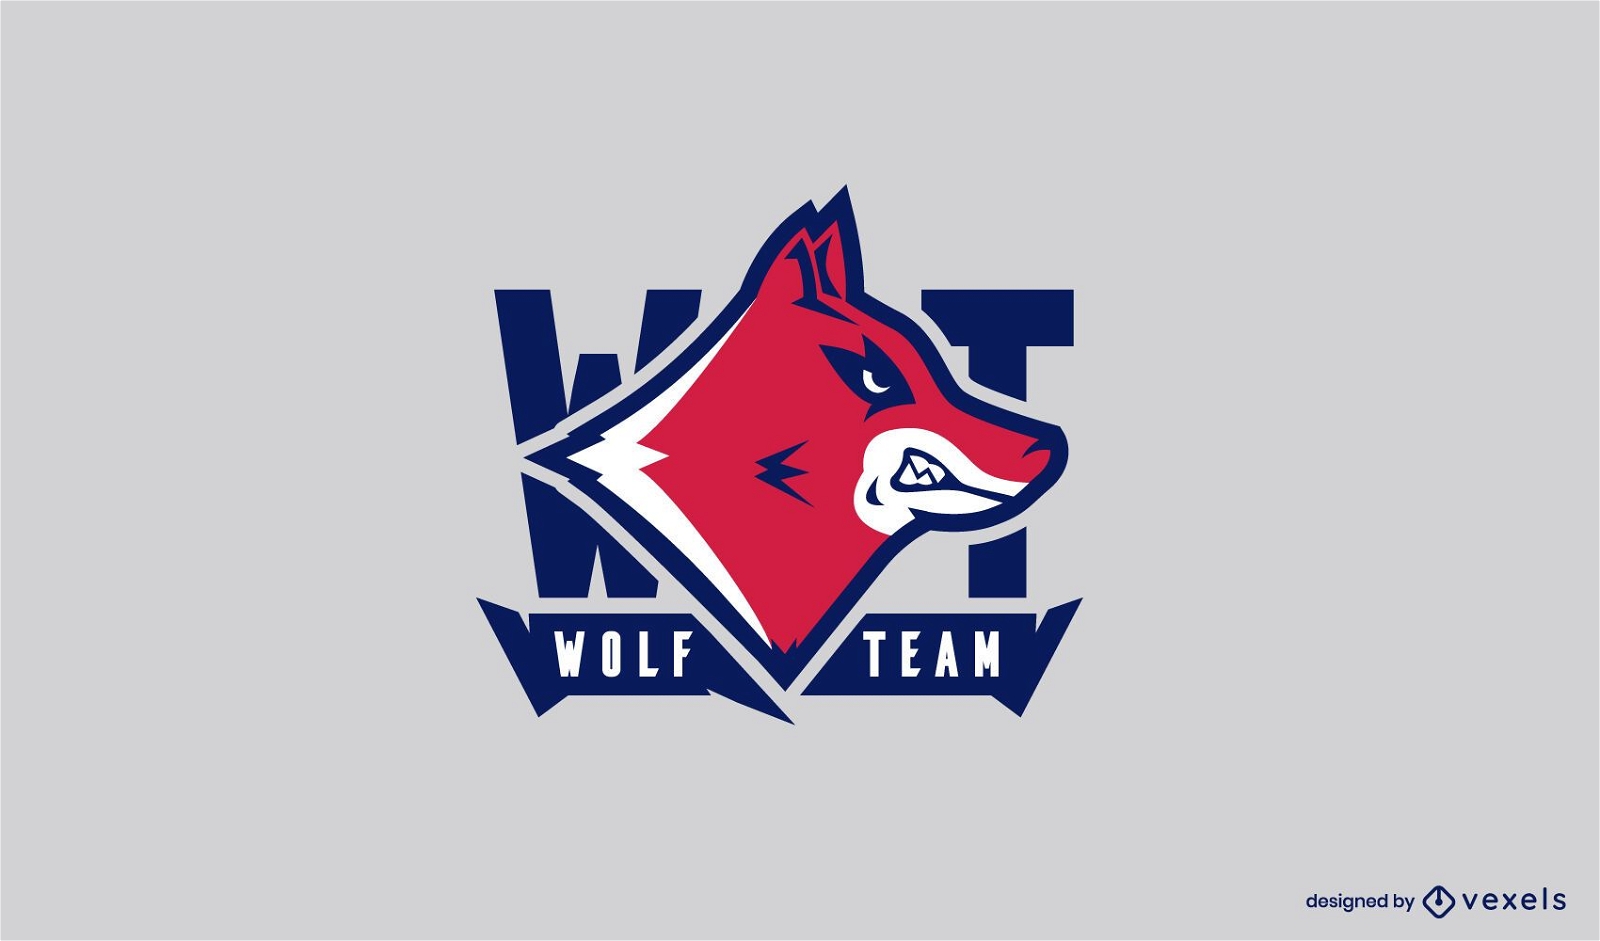 Modelo de logotipo da equipe Wolf